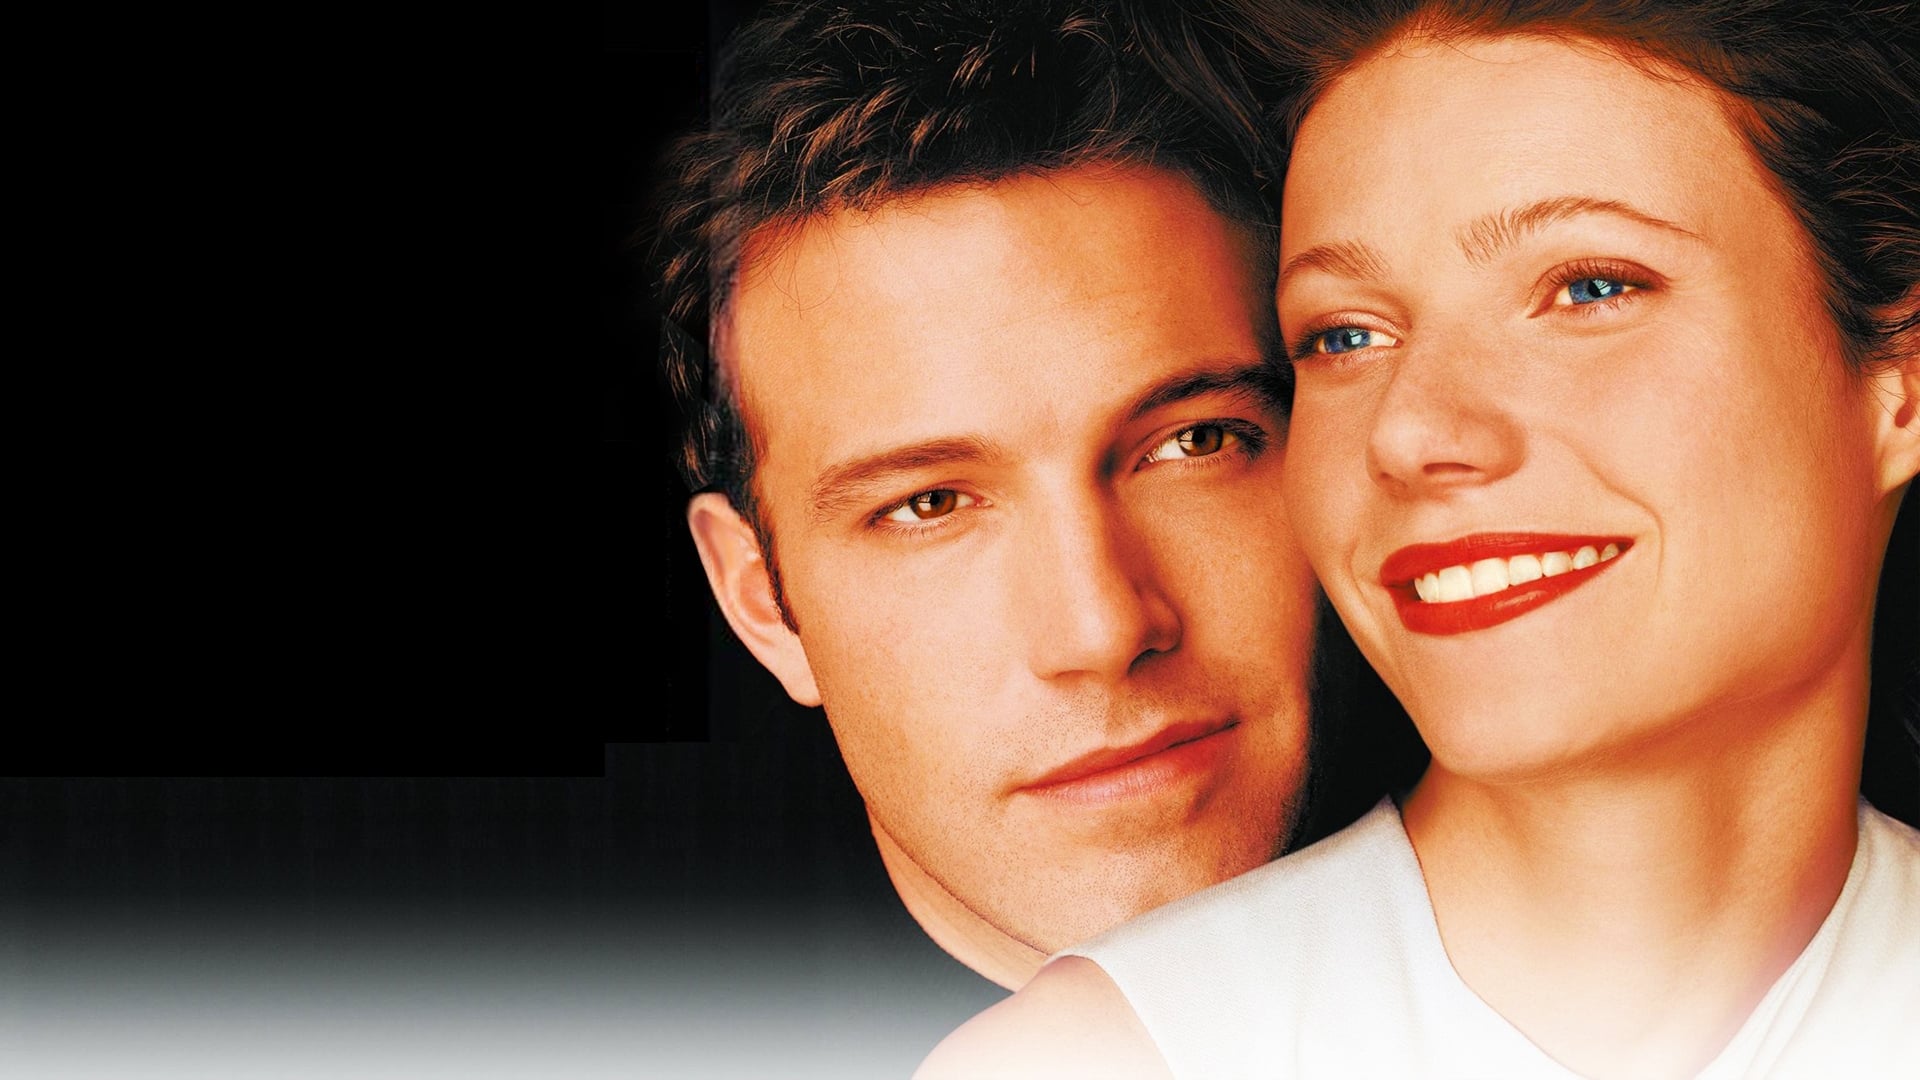 Bounce - Eine Chance für die Liebe (2000)